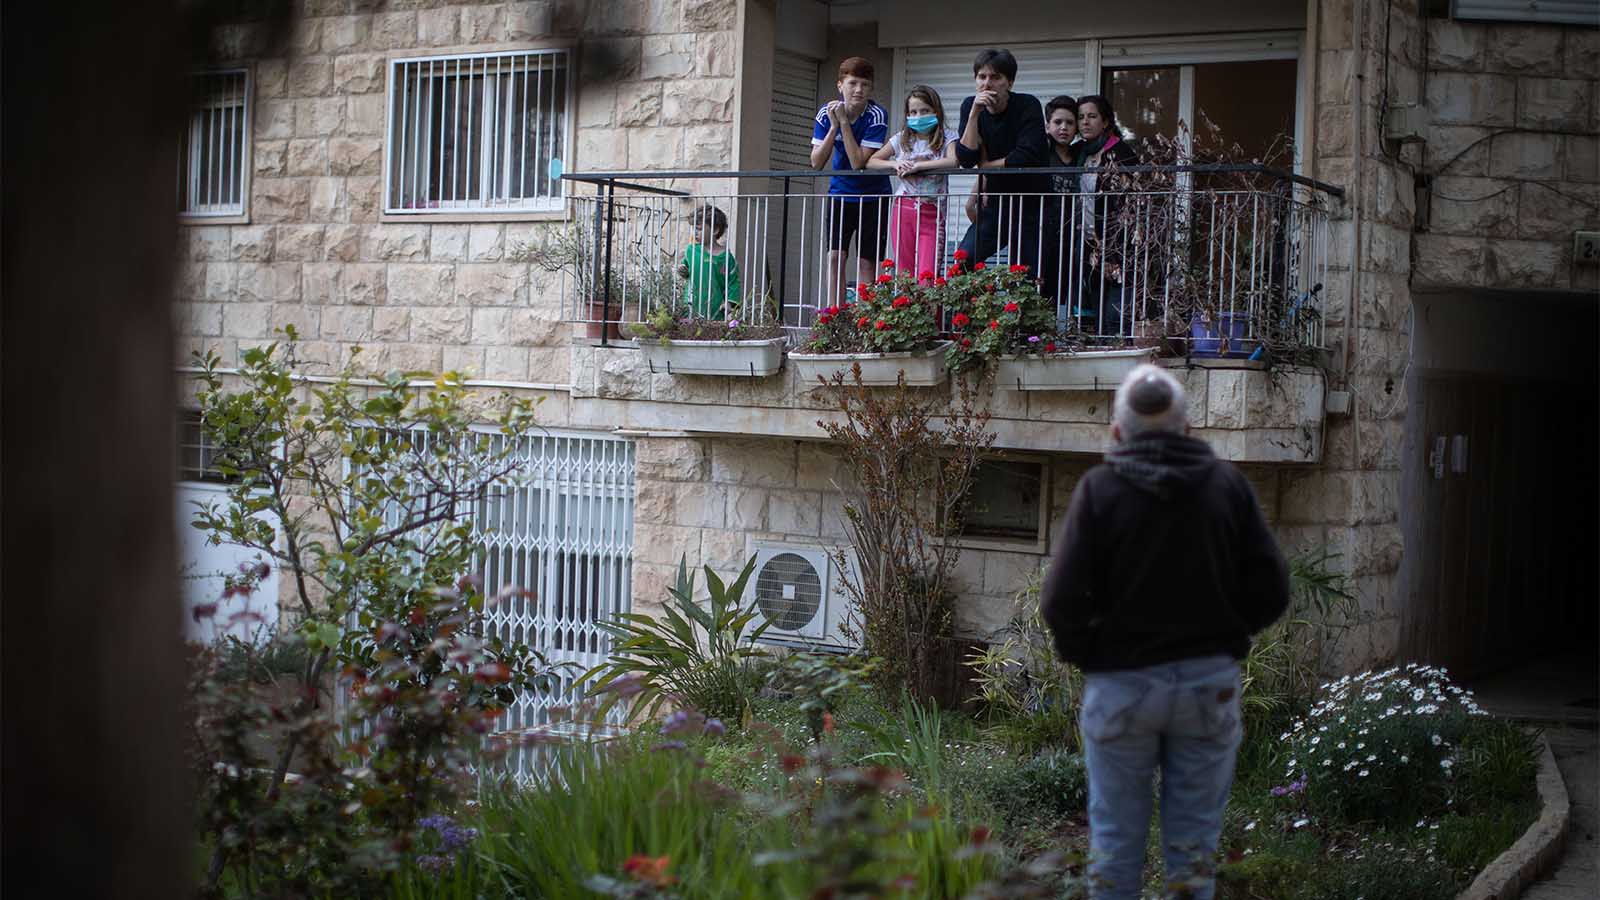 מעל מיליון ישראלים נכנסו לבידוד מפברואר, 27% מבעלי ההכנסות הנמוכות מהממוצע לא יודעים אם יישמעו להנחיות בלי פיצוי (צילום: הדס פרוש / פלאש 90)